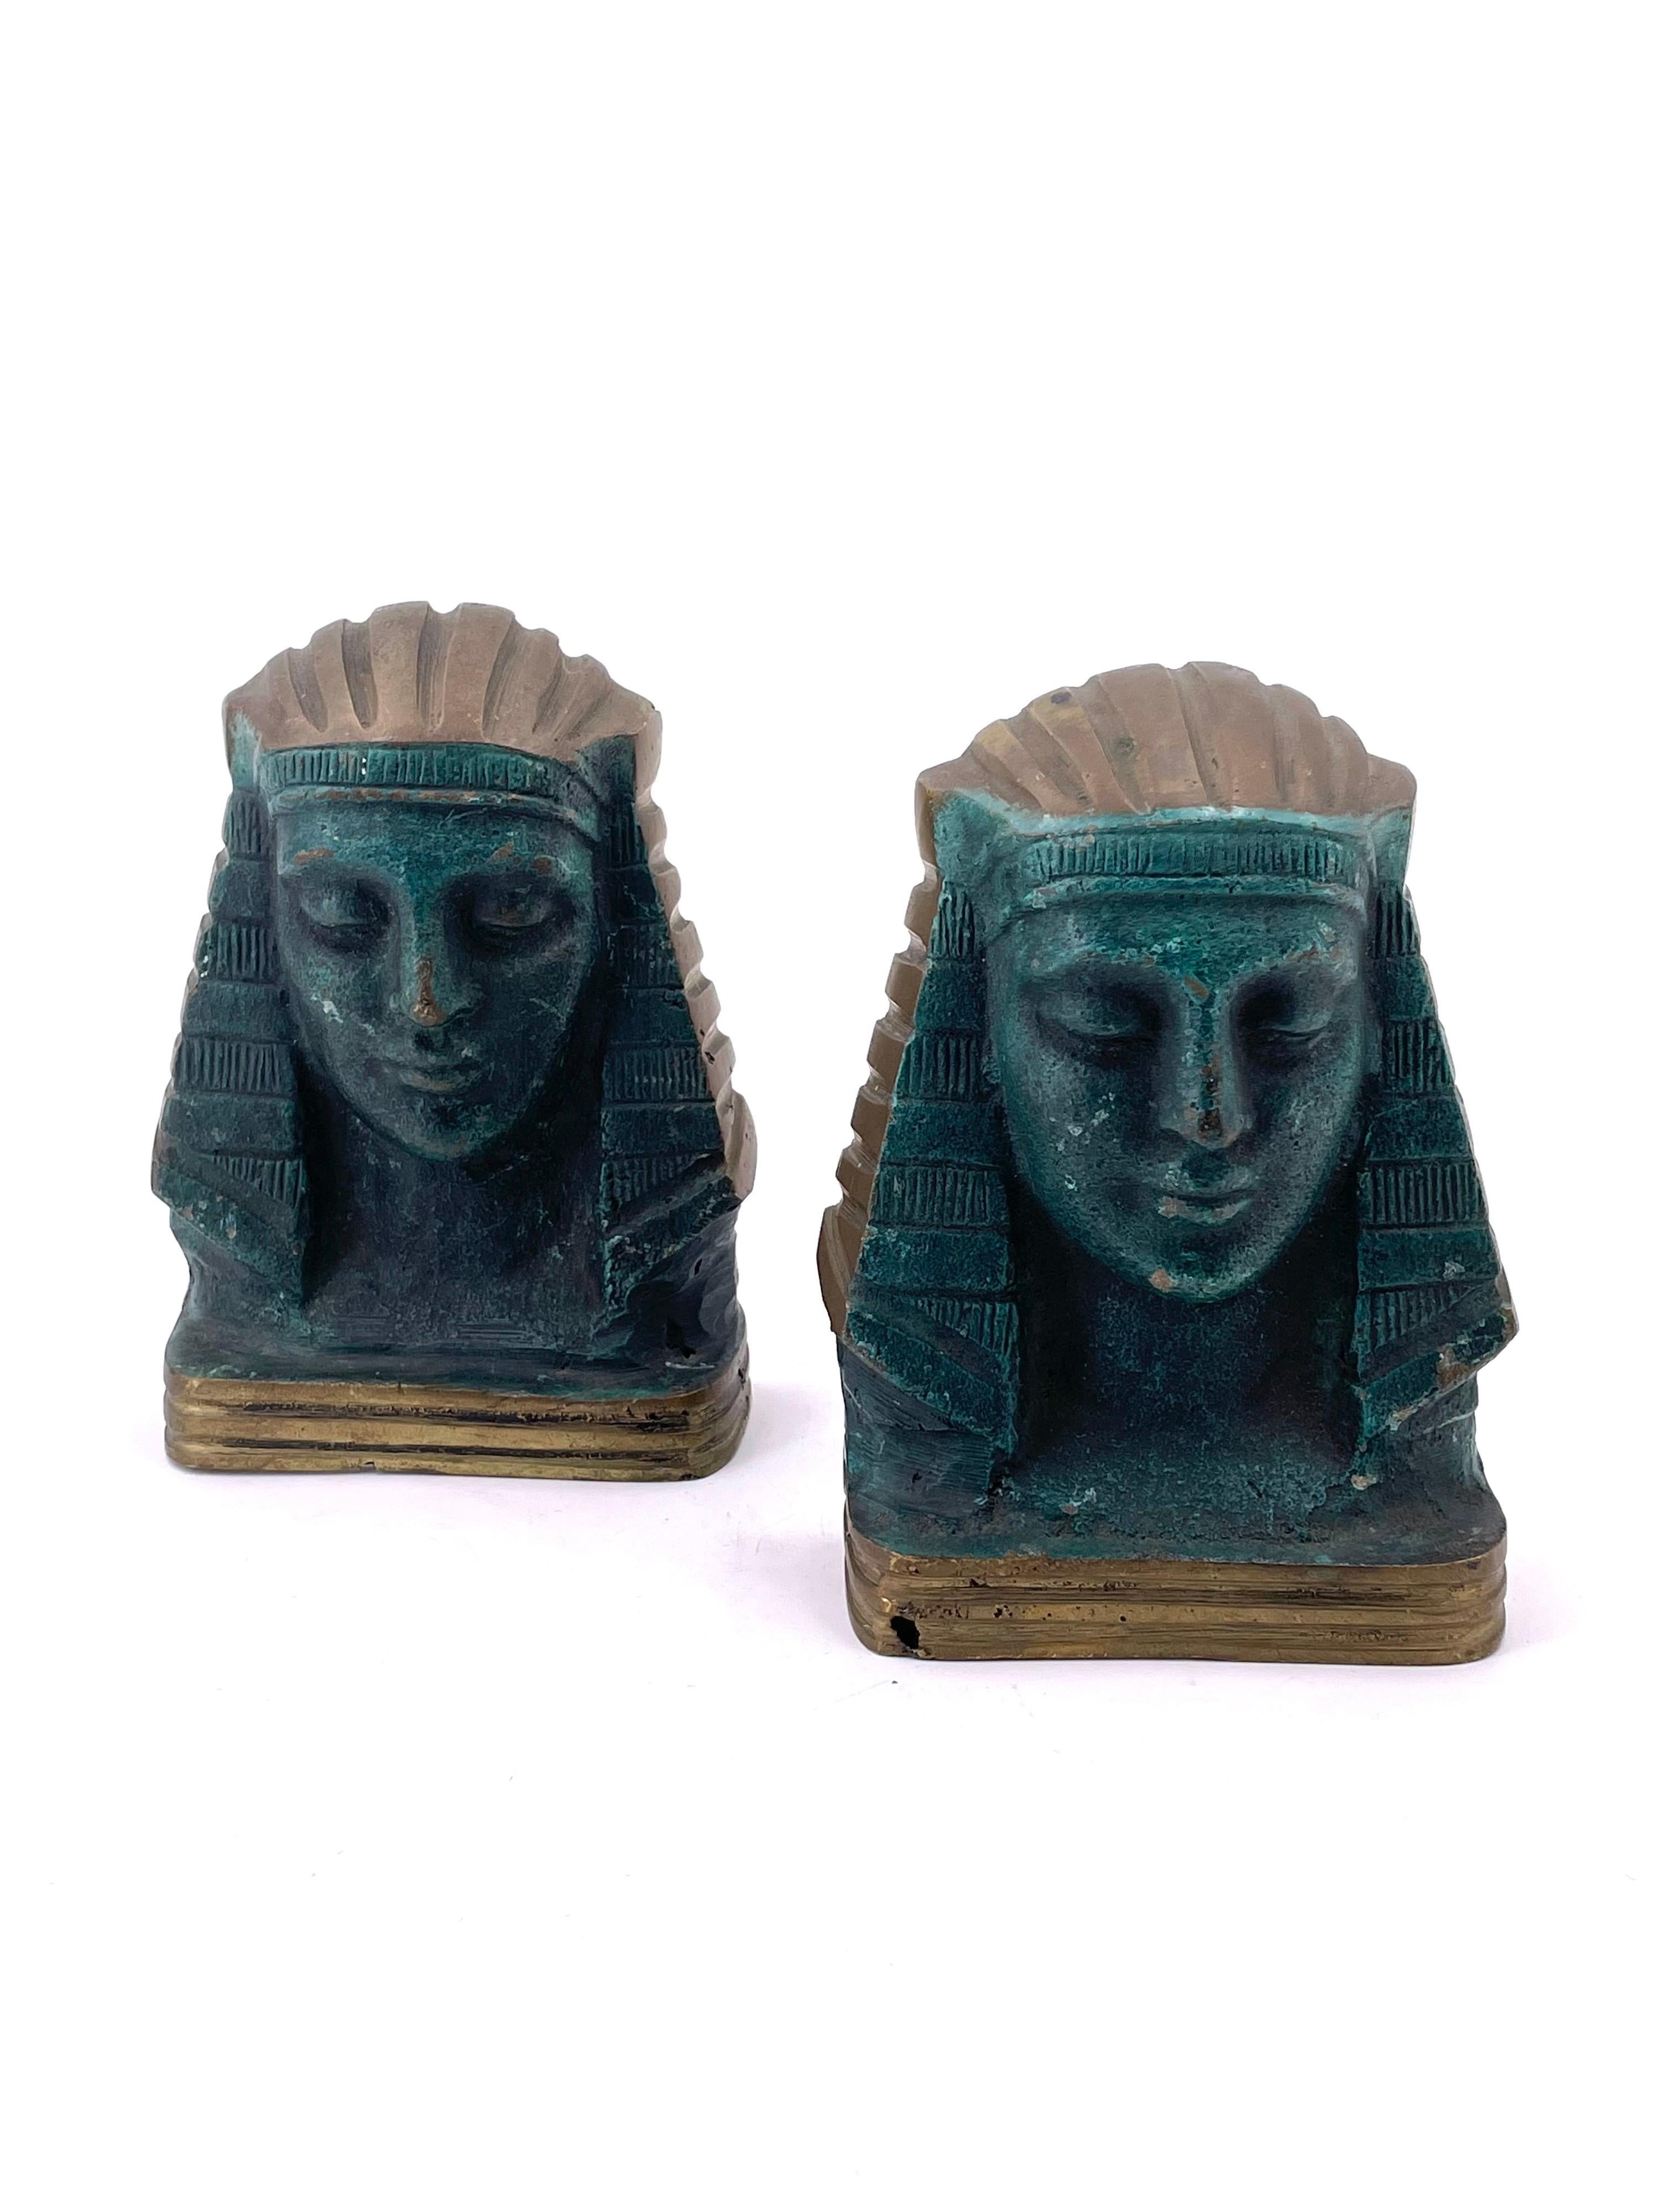 Belle et rare paire de serre-livres égyptiens en bronze moulé patiné, circa 1950 en état d'origine.